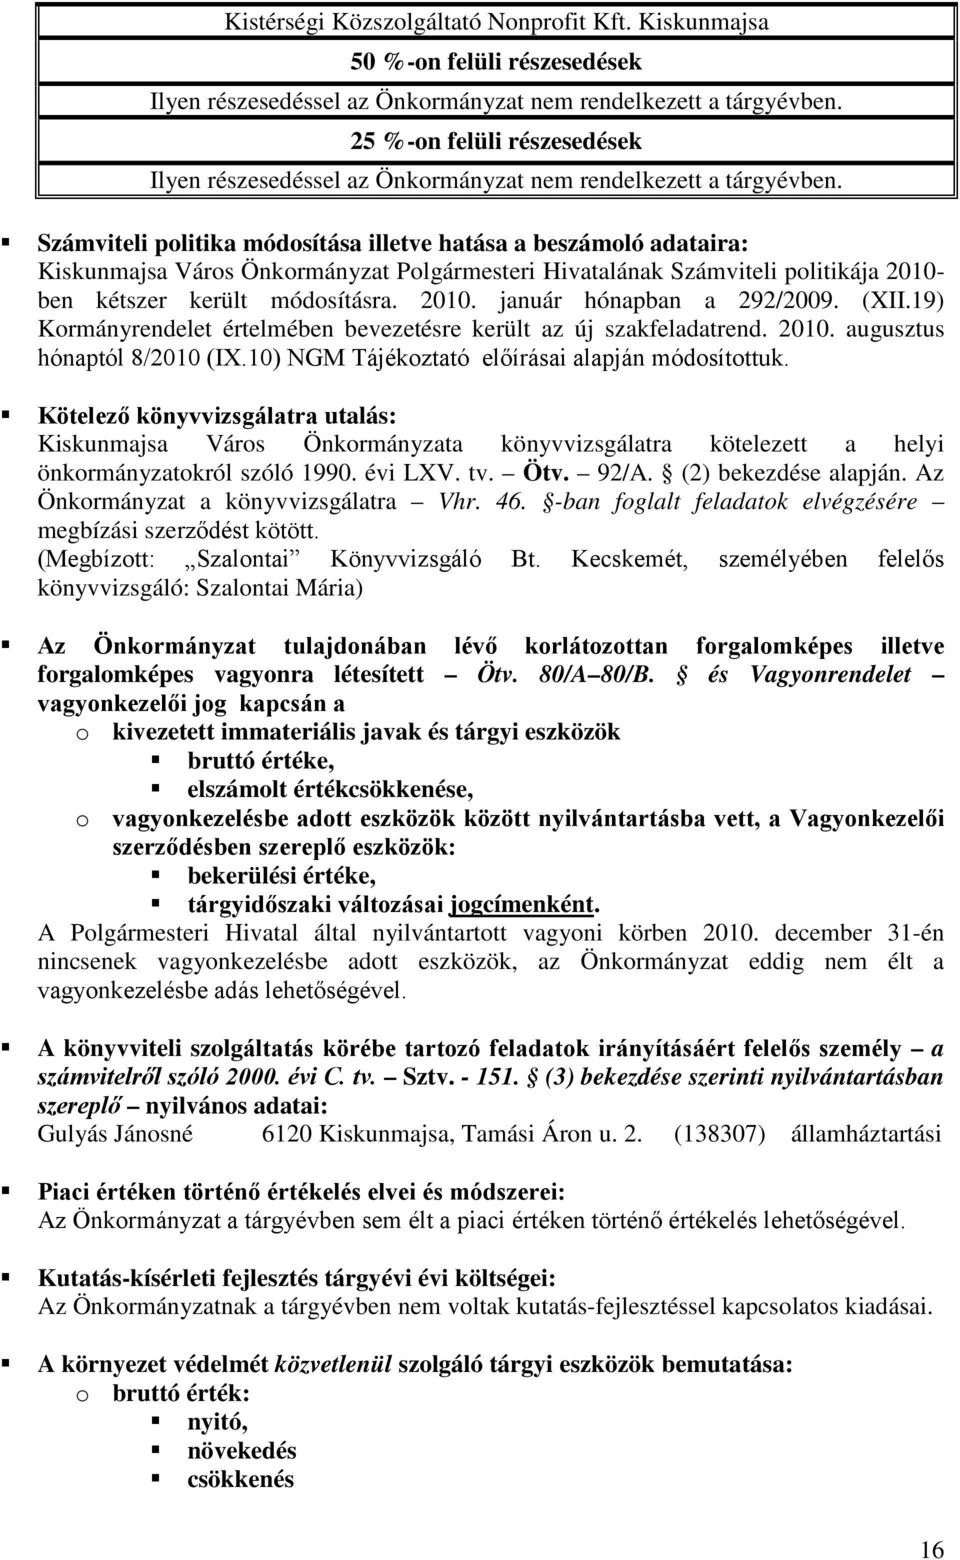 Számviteli politika módosítása illetve hatása a beszámoló adataira: Kiskunmajsa Város Önkormányzat Polgármesteri Hivatalának Számviteli politikája 2010- ben kétszer került módosításra. 2010. január hónapban a 292/2009.